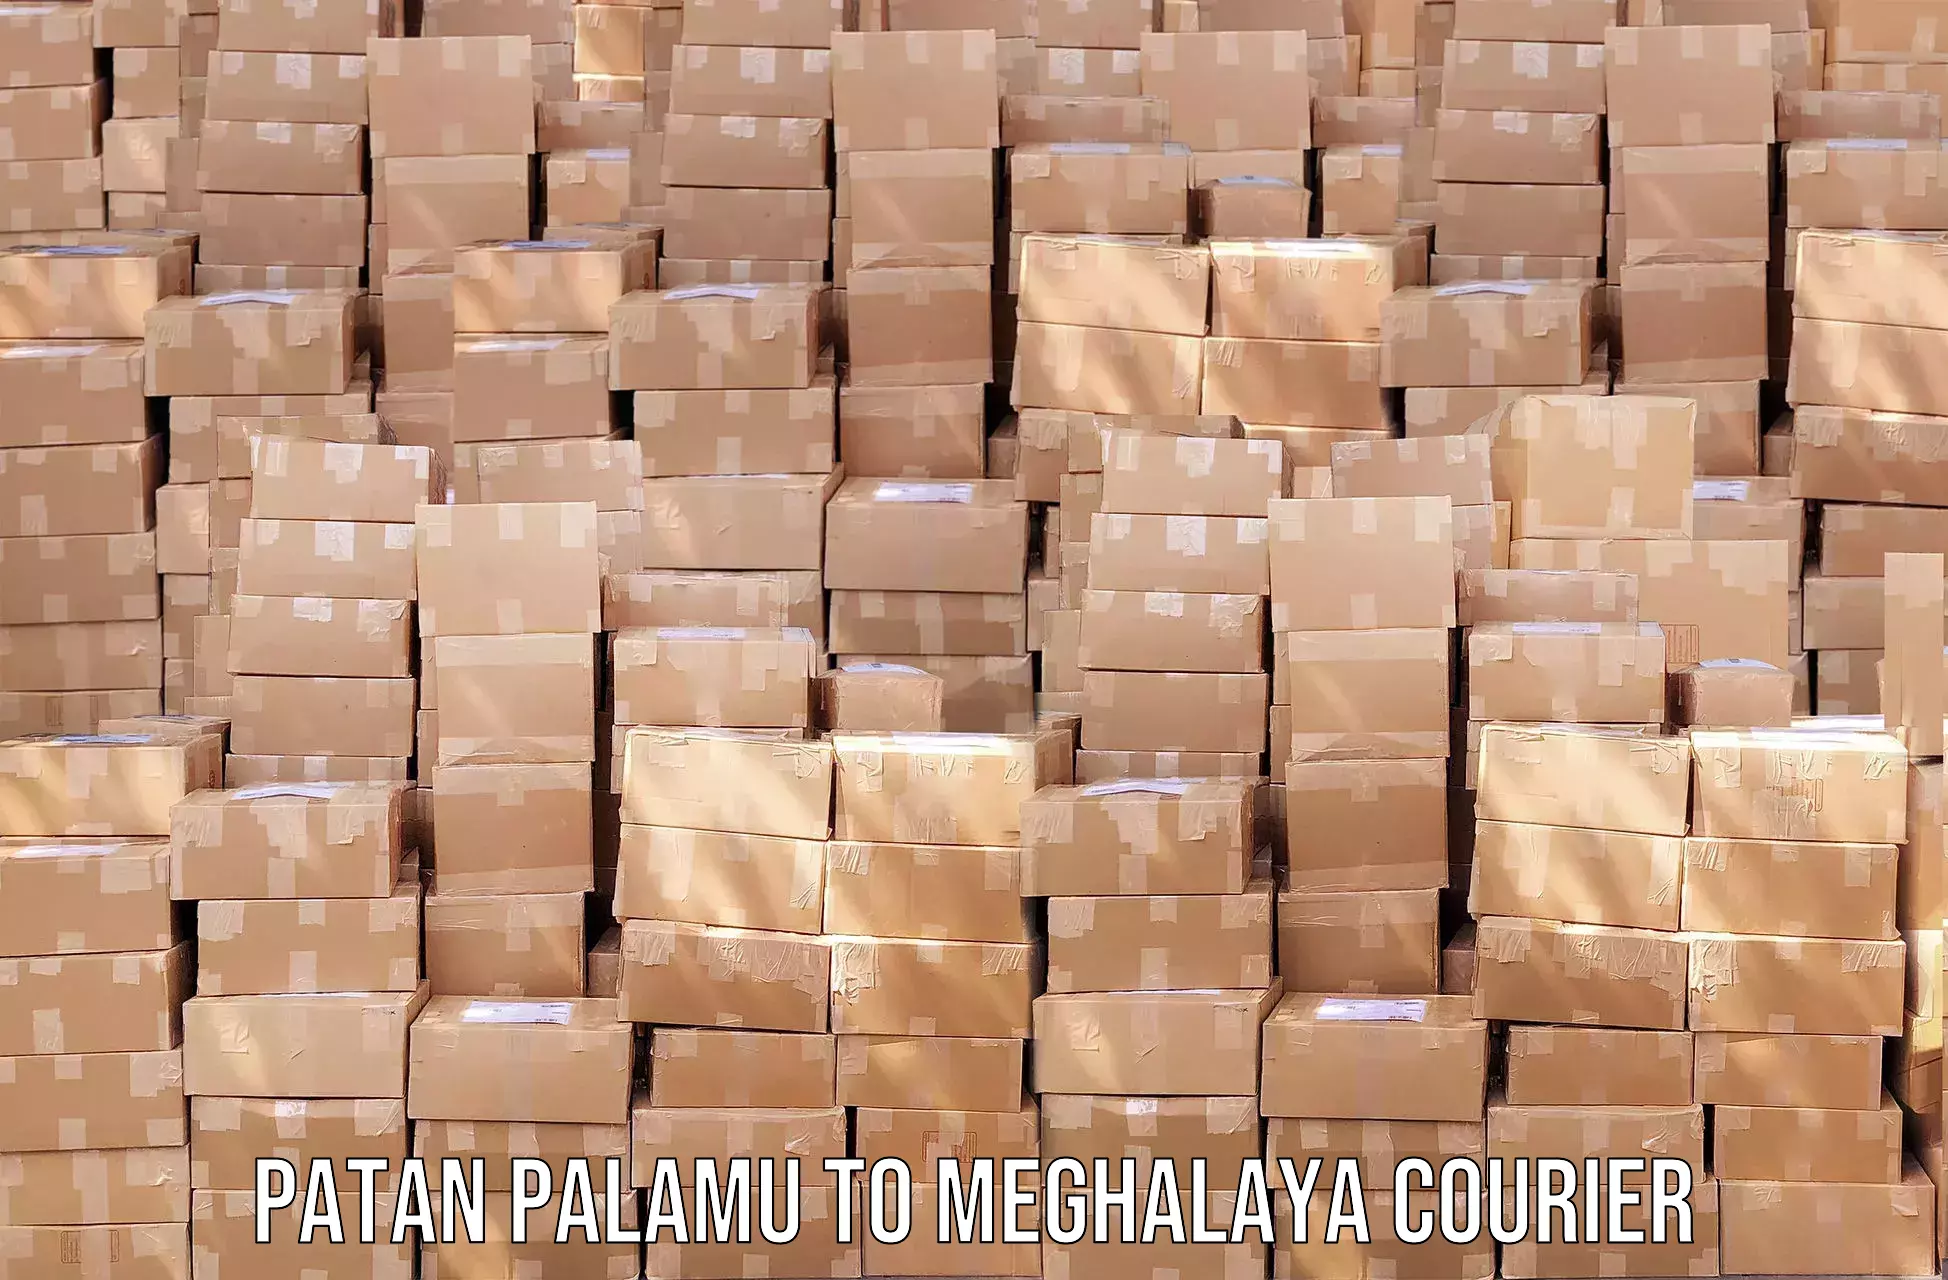 Urgent courier needs Patan Palamu to Meghalaya